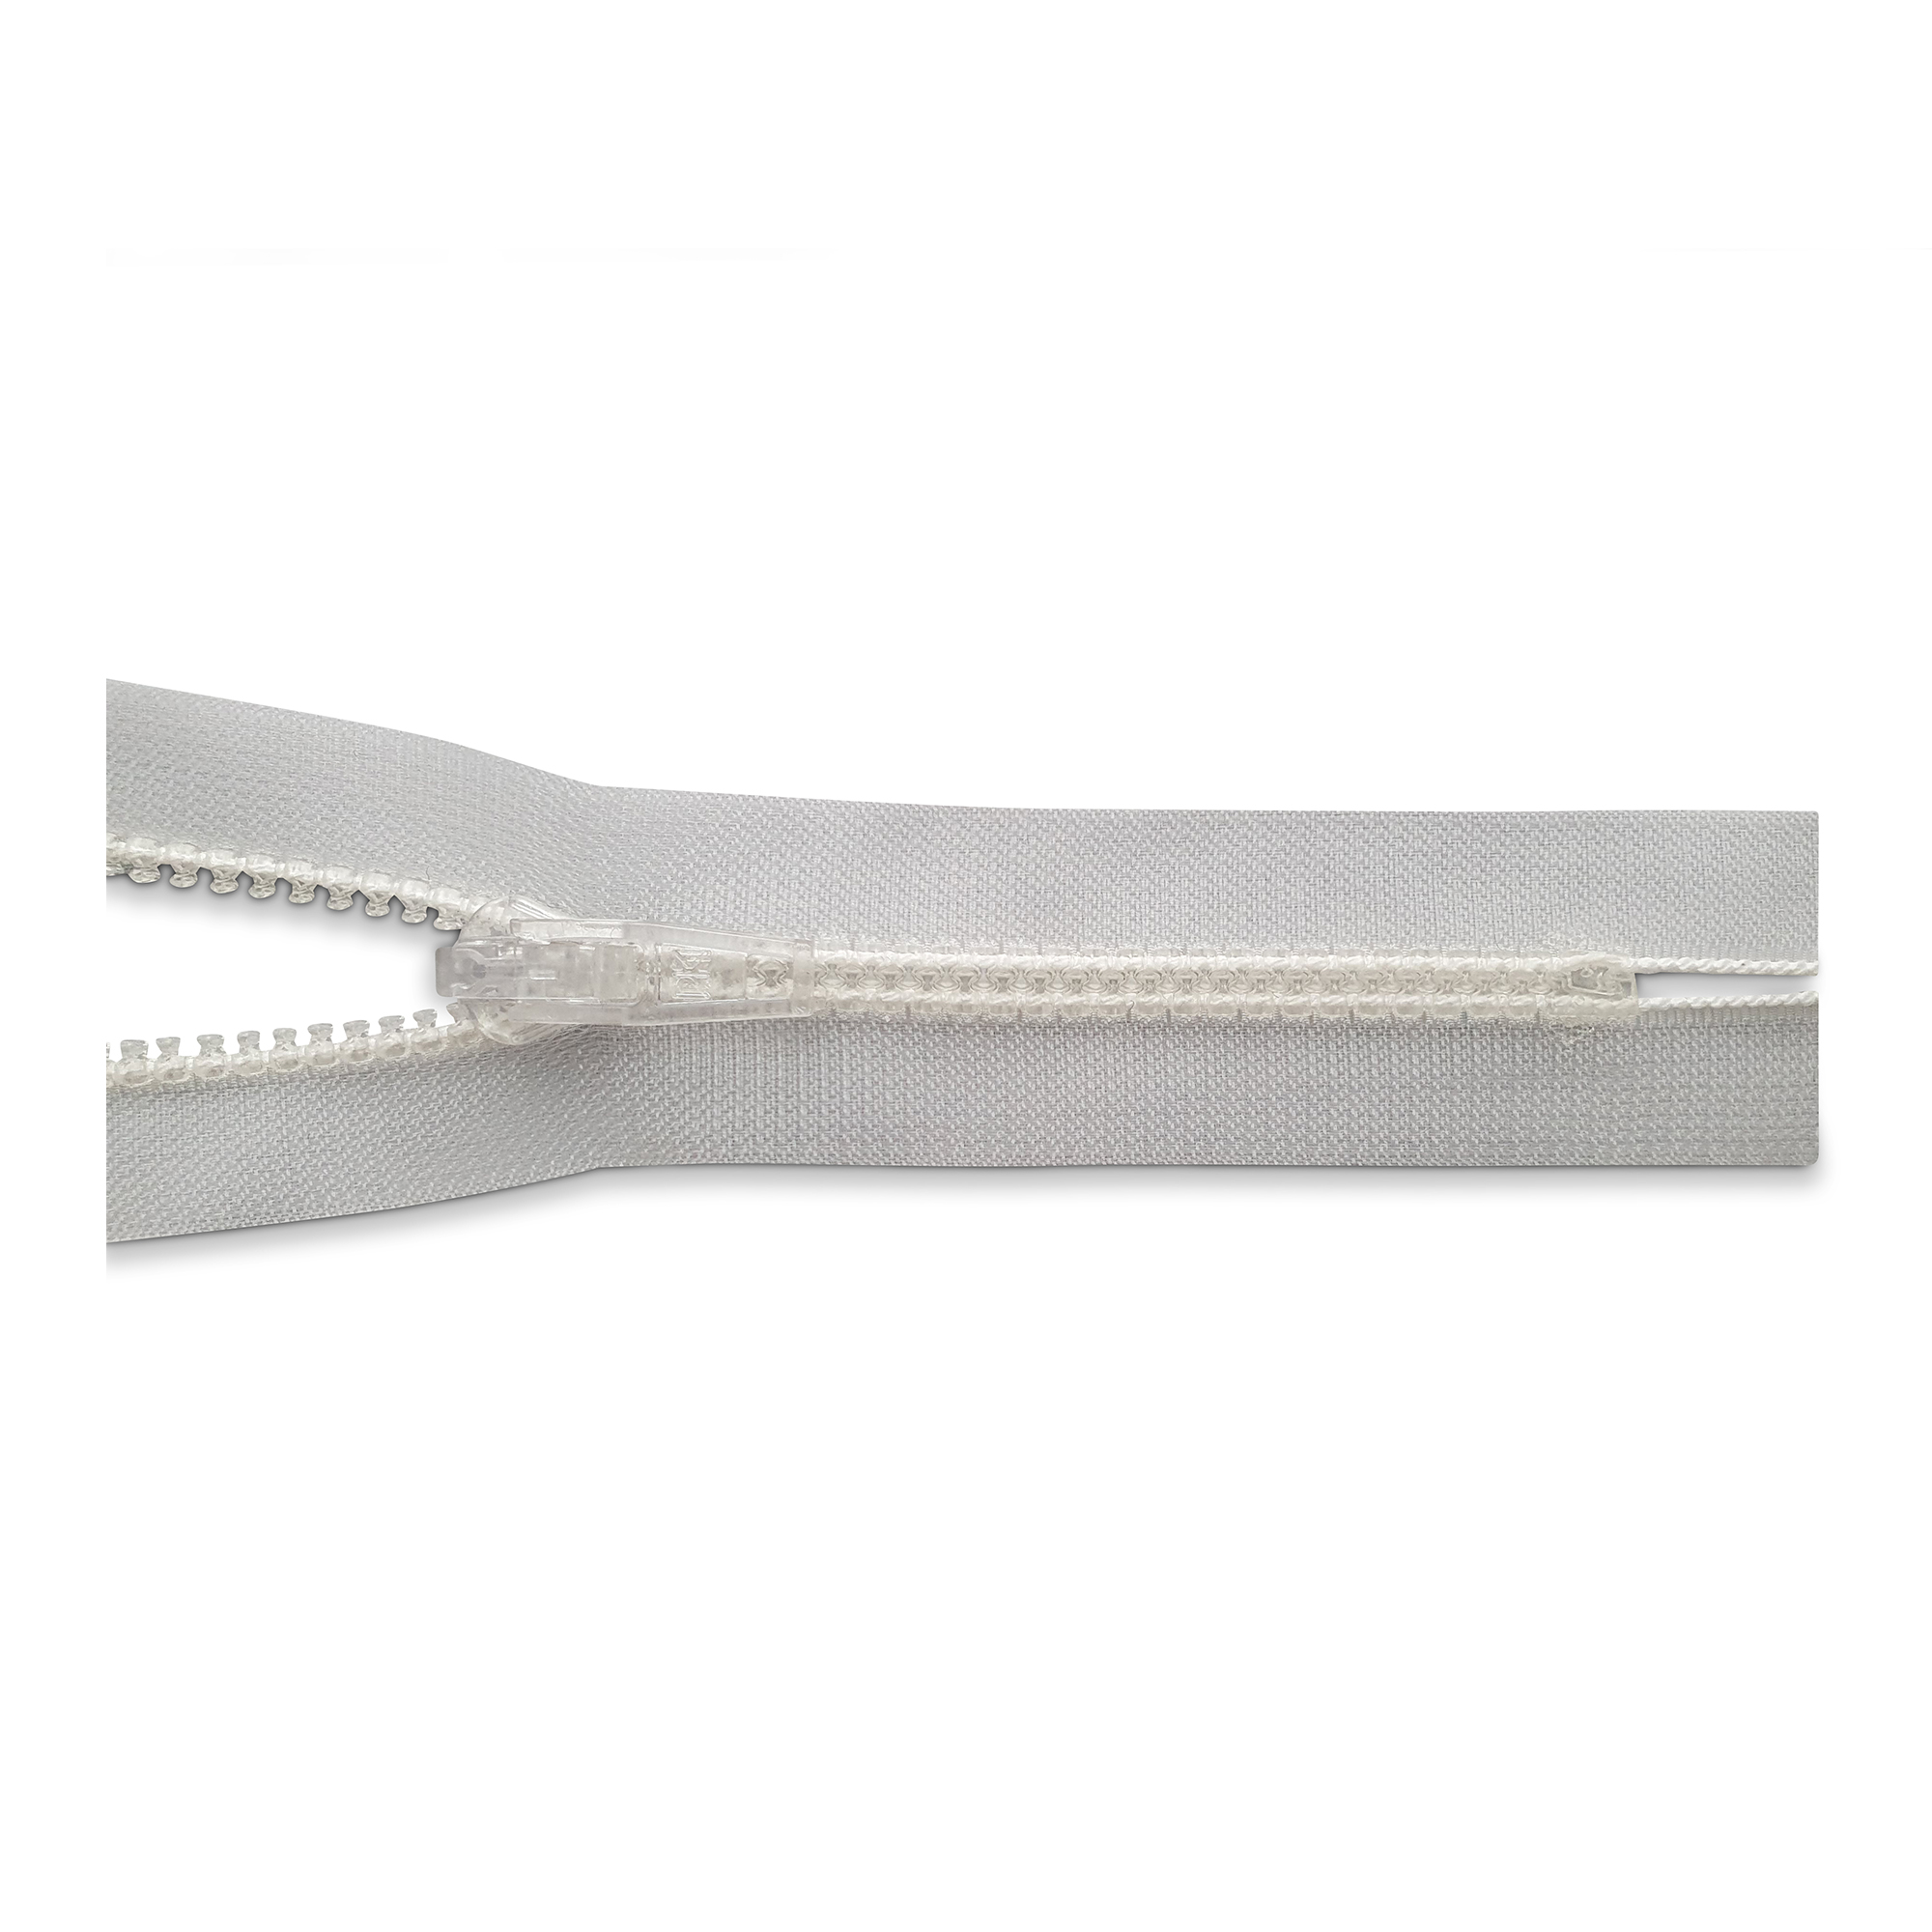 Reißverschluss, nicht teilbar, K.stoff Zähne breit, transparent, hochwertiger Marken-Reißverschluss von Rubi/Barcelona